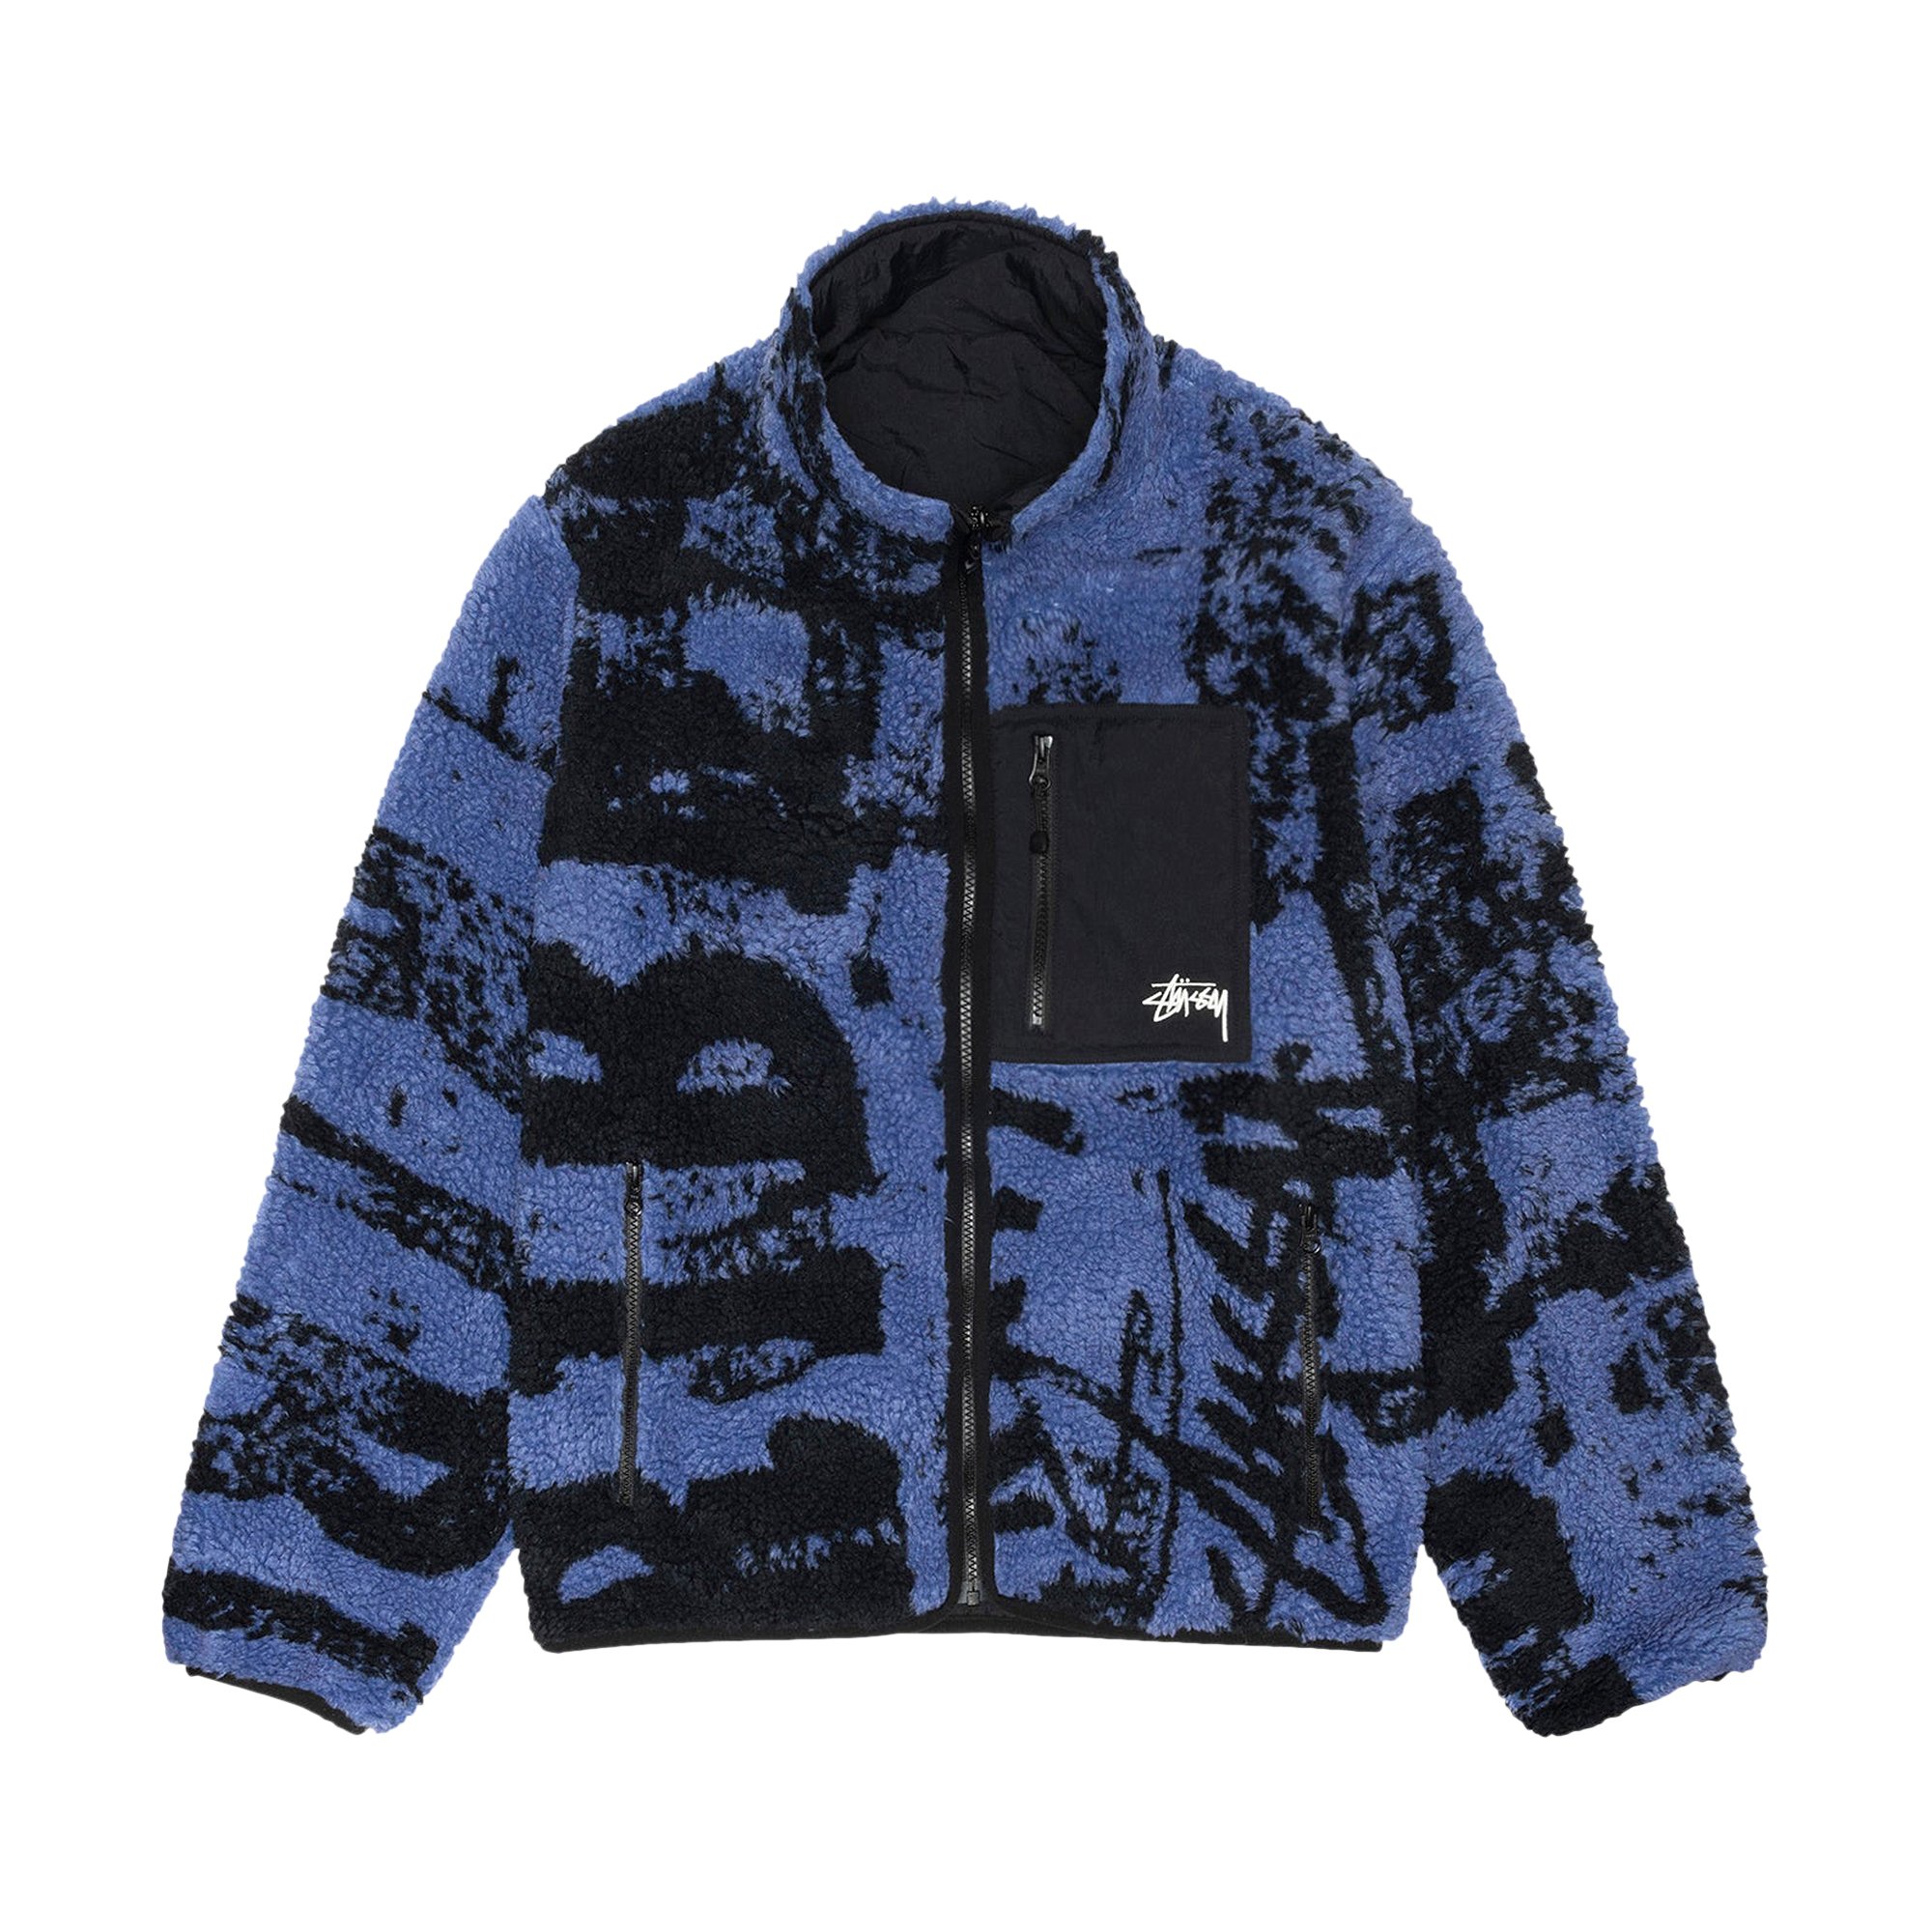 Buy Stussy Sherpa Reversible Printed Jacket 'Blue' - 118545 BLUE 